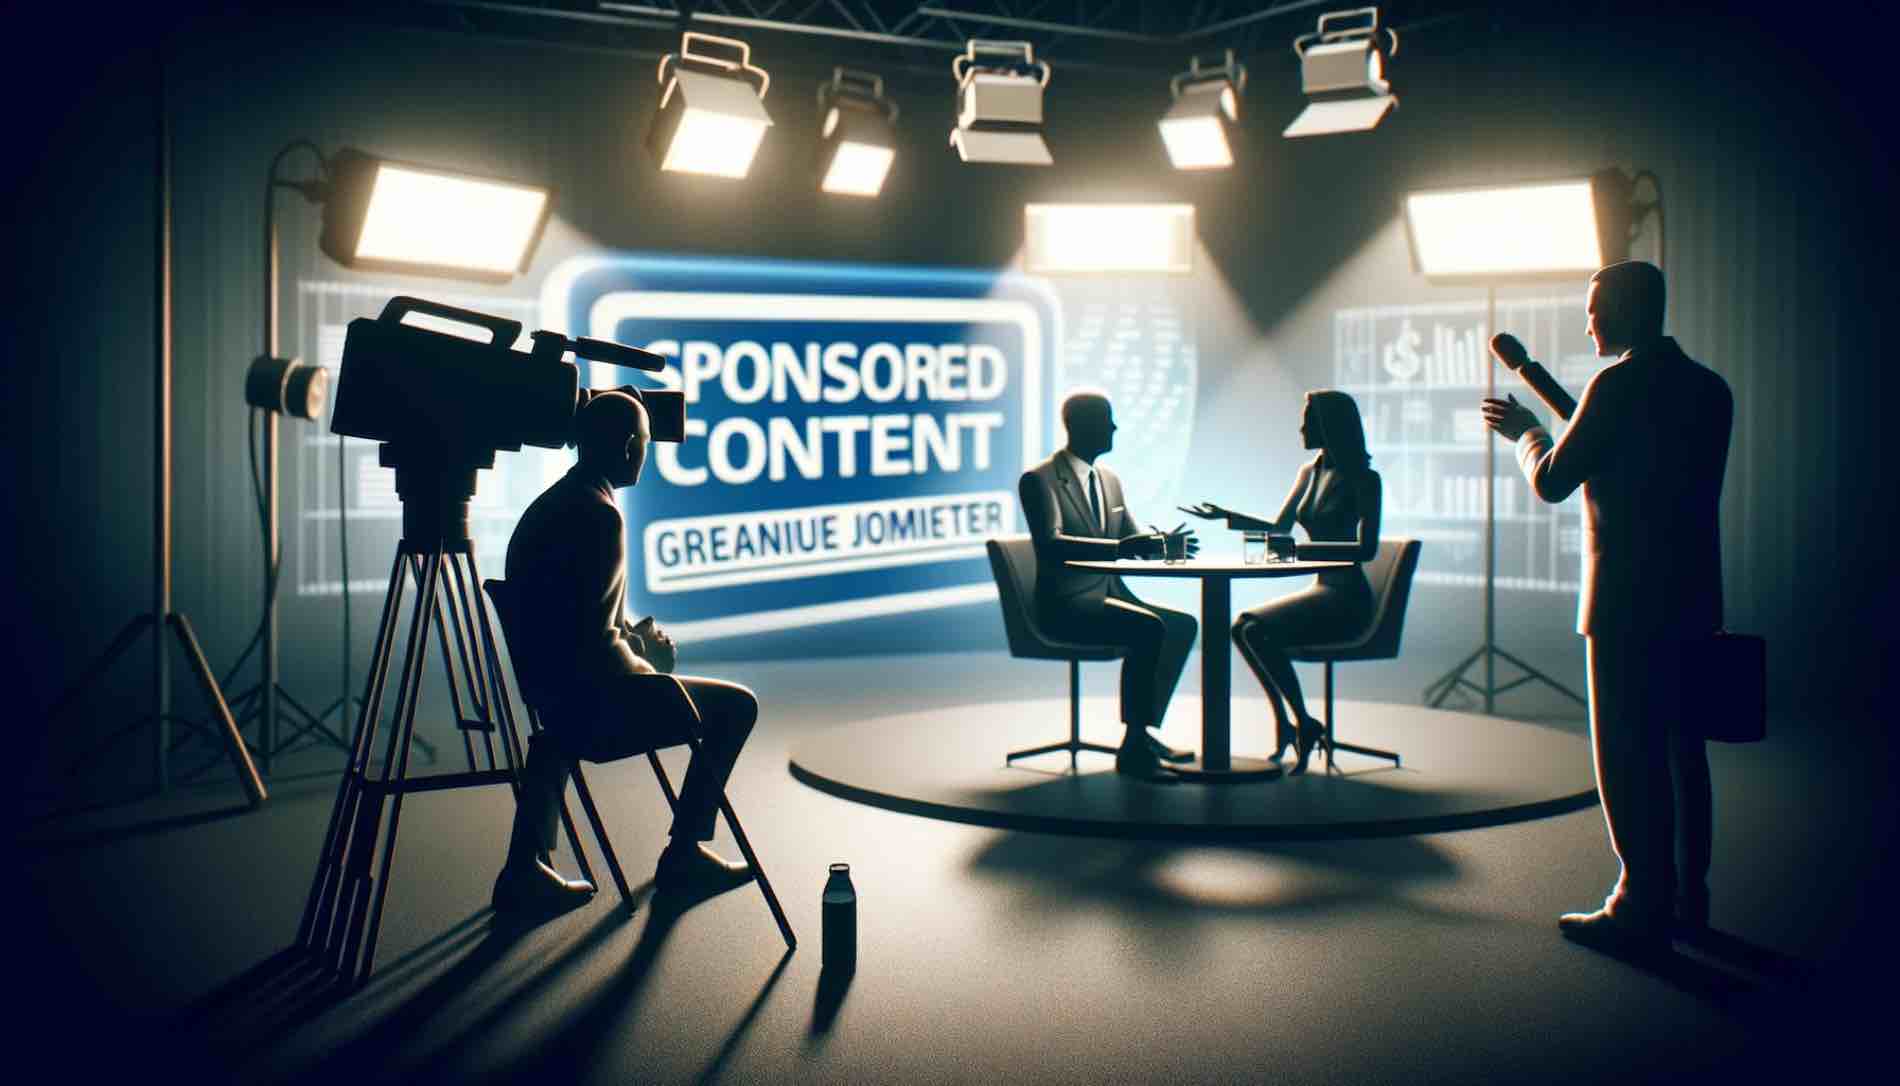 Les interviews télévisées sponsorisées et les risques éthiques et juridiques